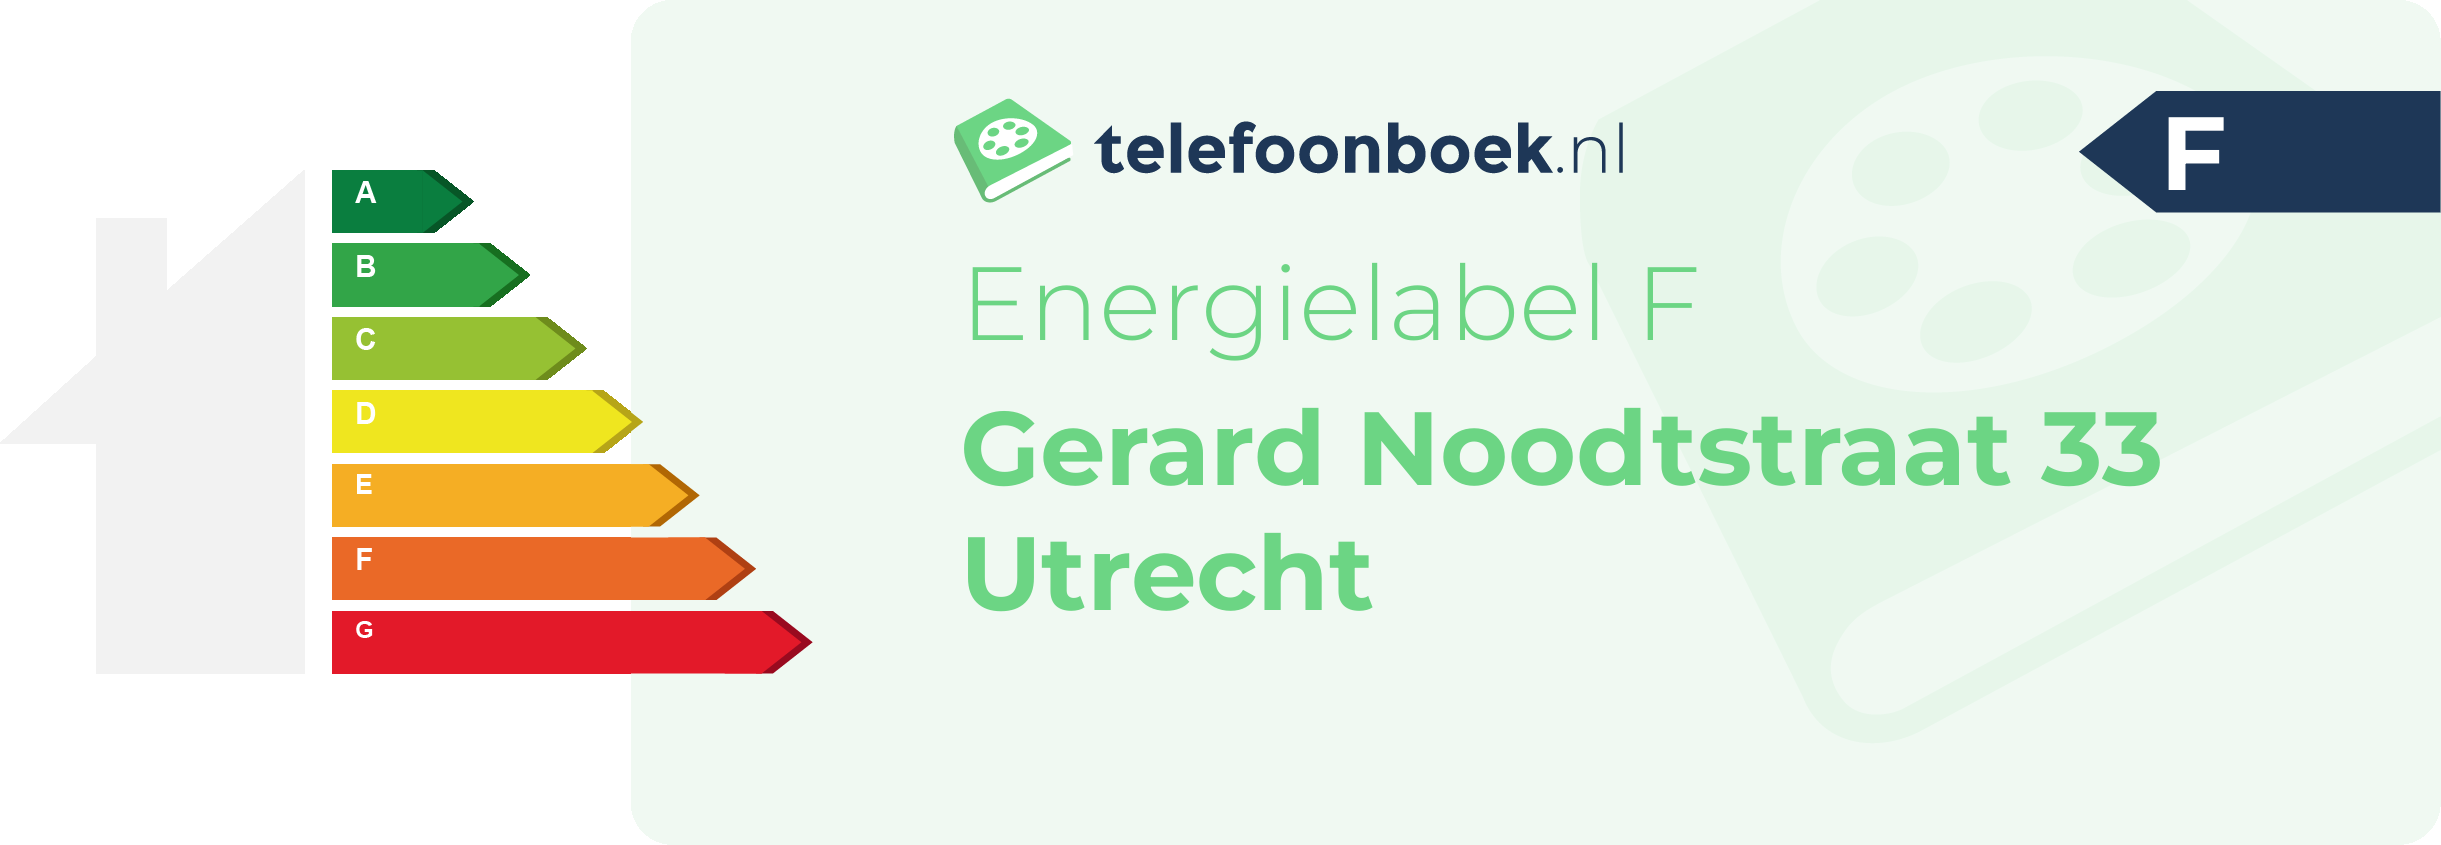 Energielabel Gerard Noodtstraat 33 Utrecht